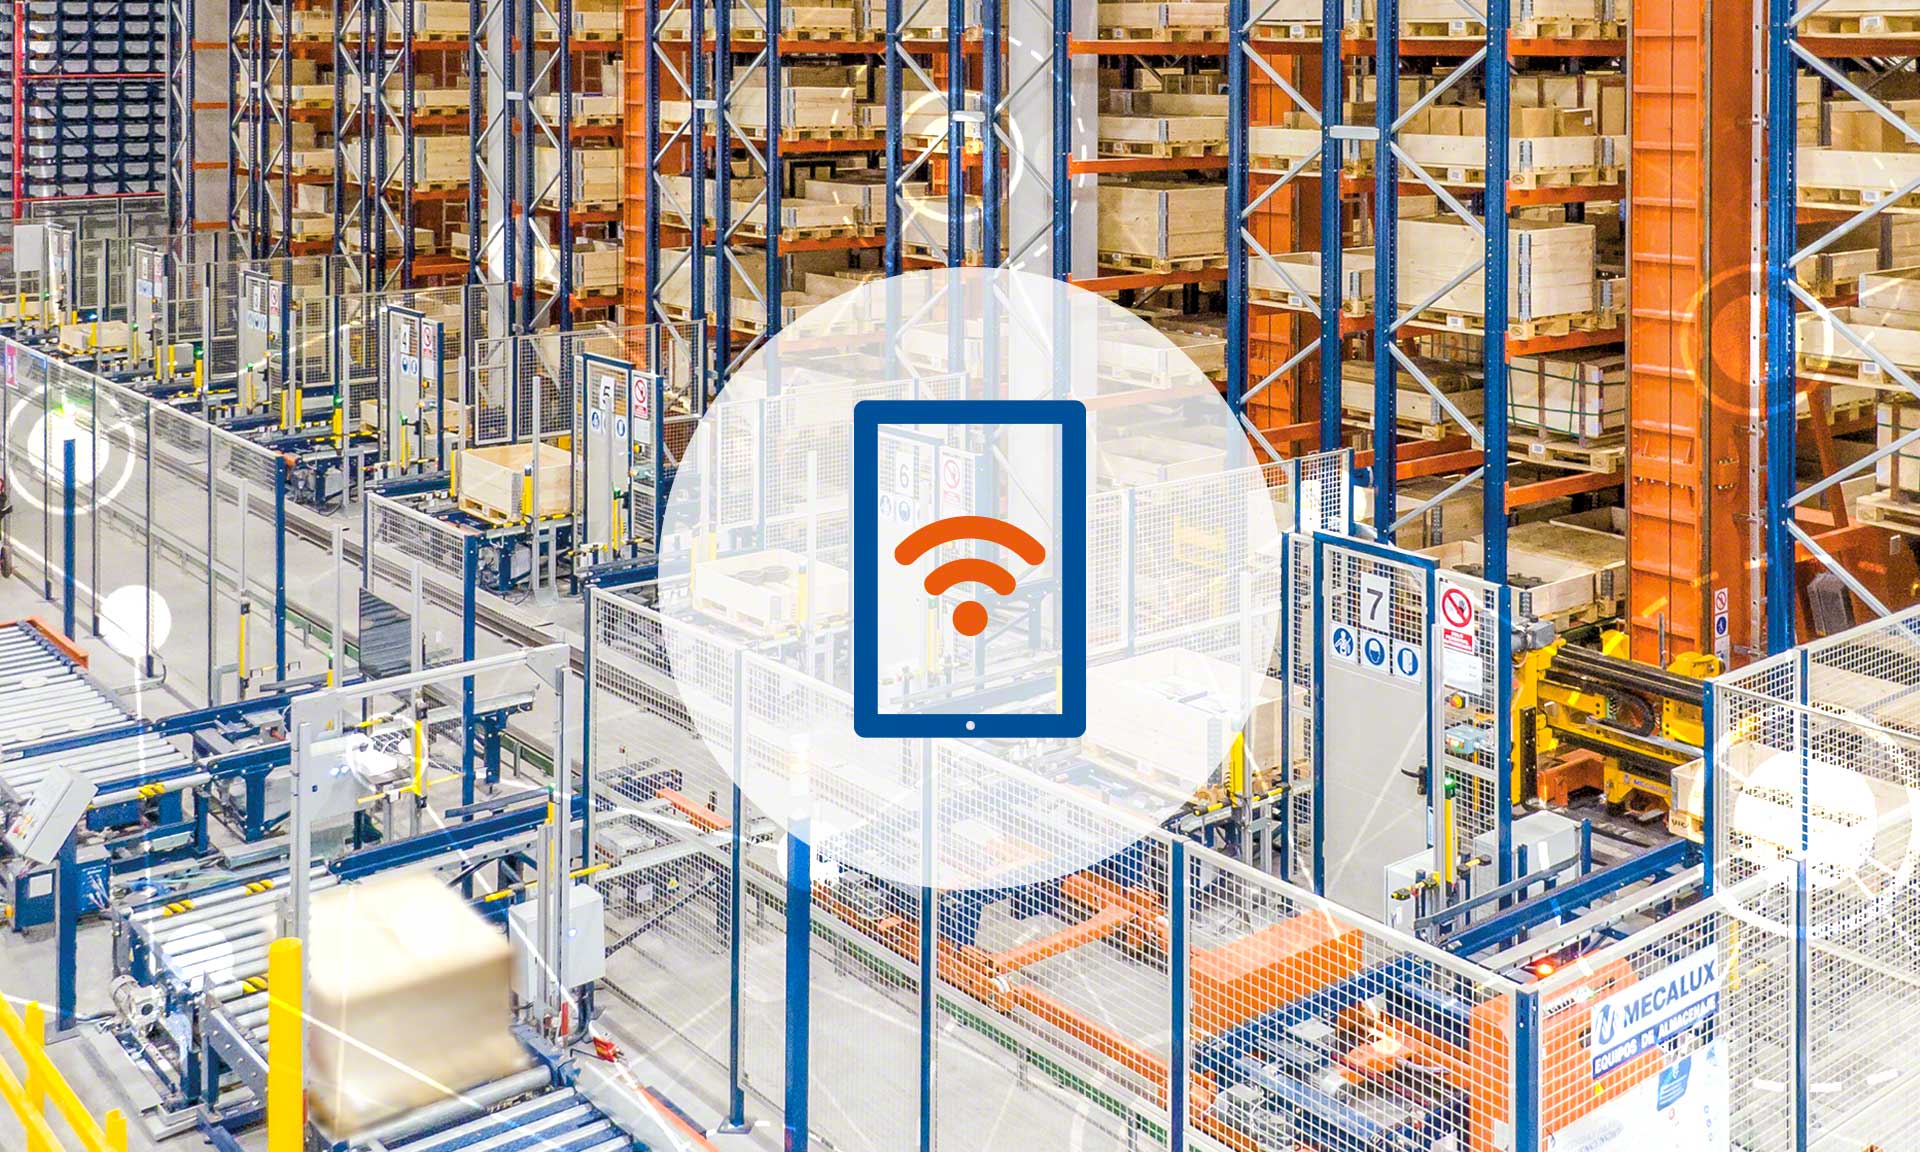 El wifi industrial es la tecnología de ethernet inalámbrica que se emplea en bodegas y centros de producción